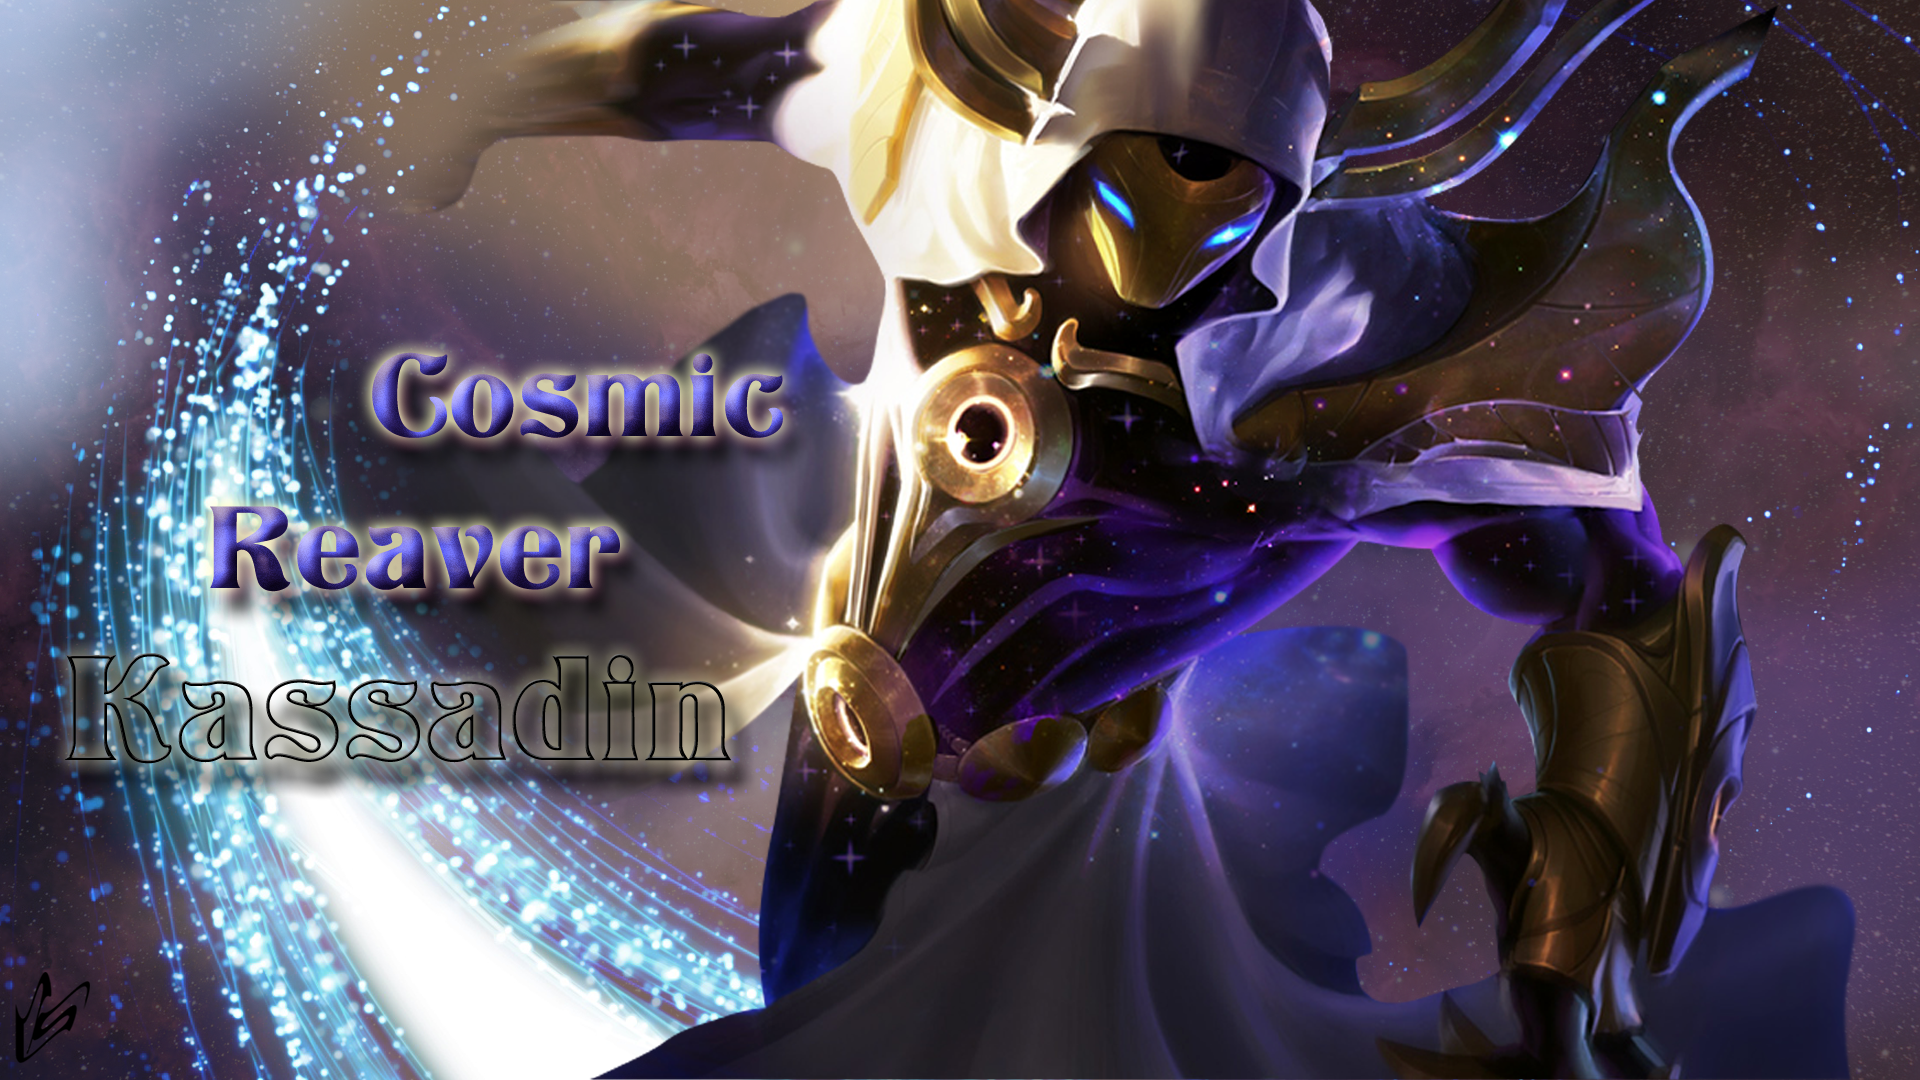 Cosmic Reaver Kassadin Wallpaper - Cosmic Reaver Kassadin , HD Wallpaper & Backgrounds